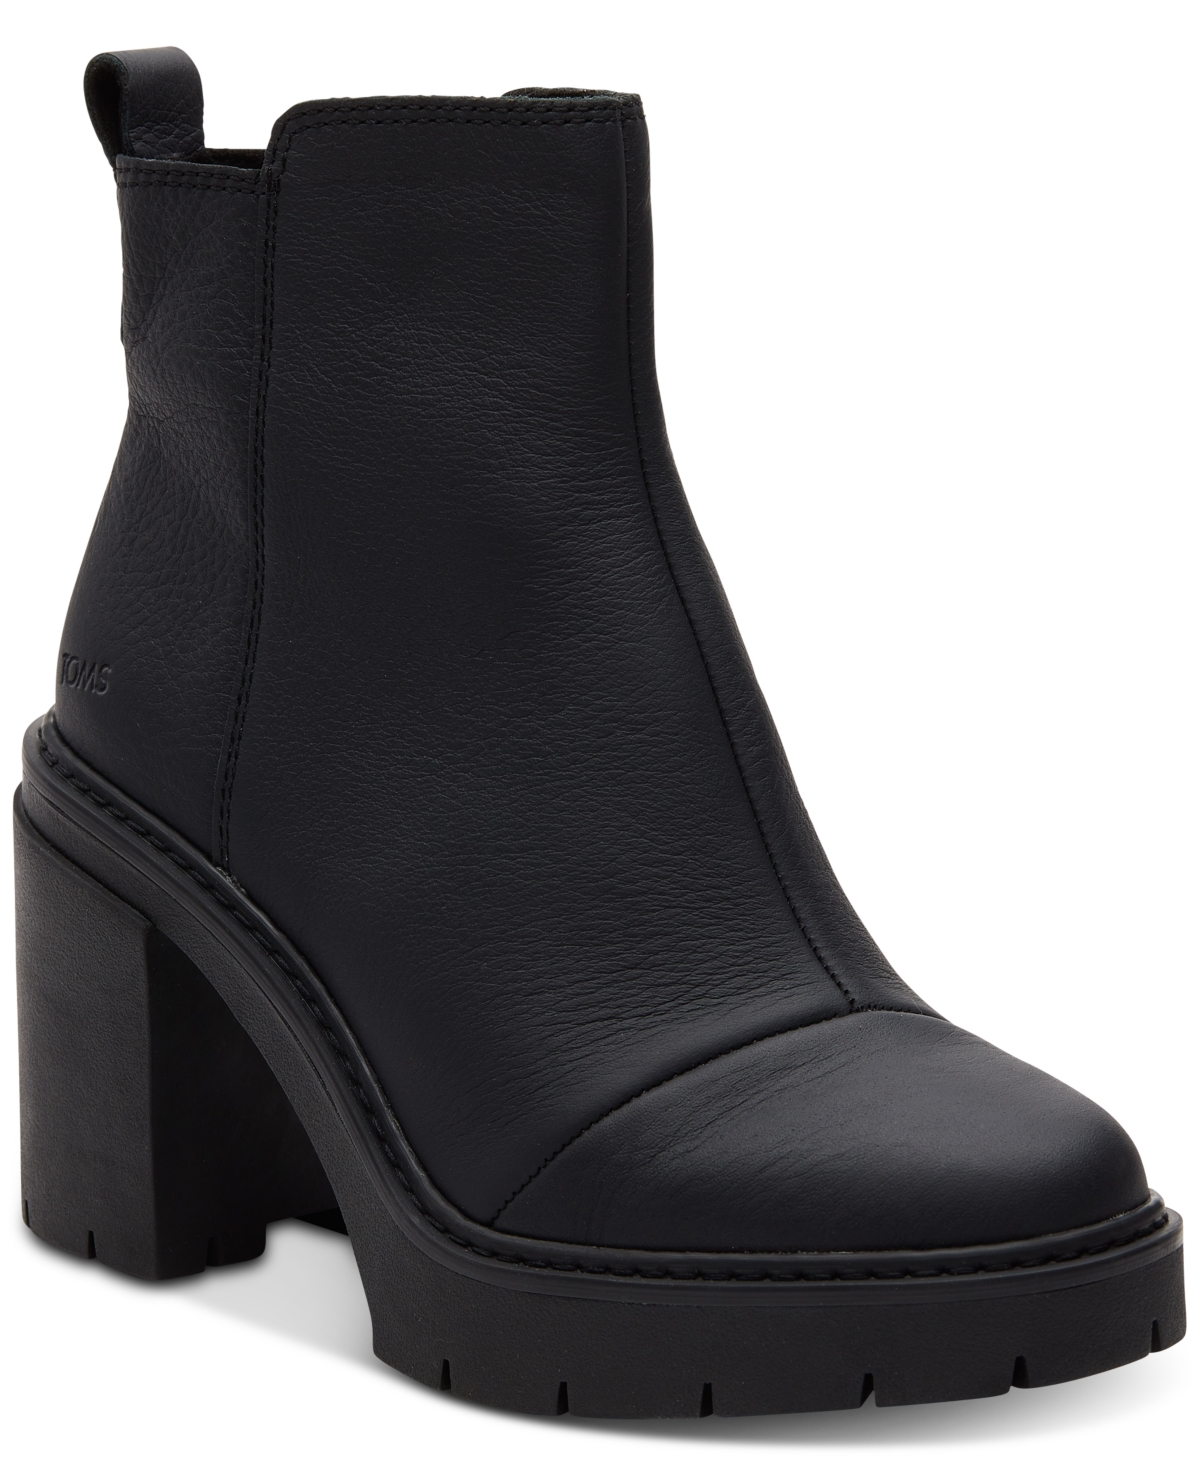 Women's Rya Lug Sole Block Heel Platform Booties - Black/Black Leather